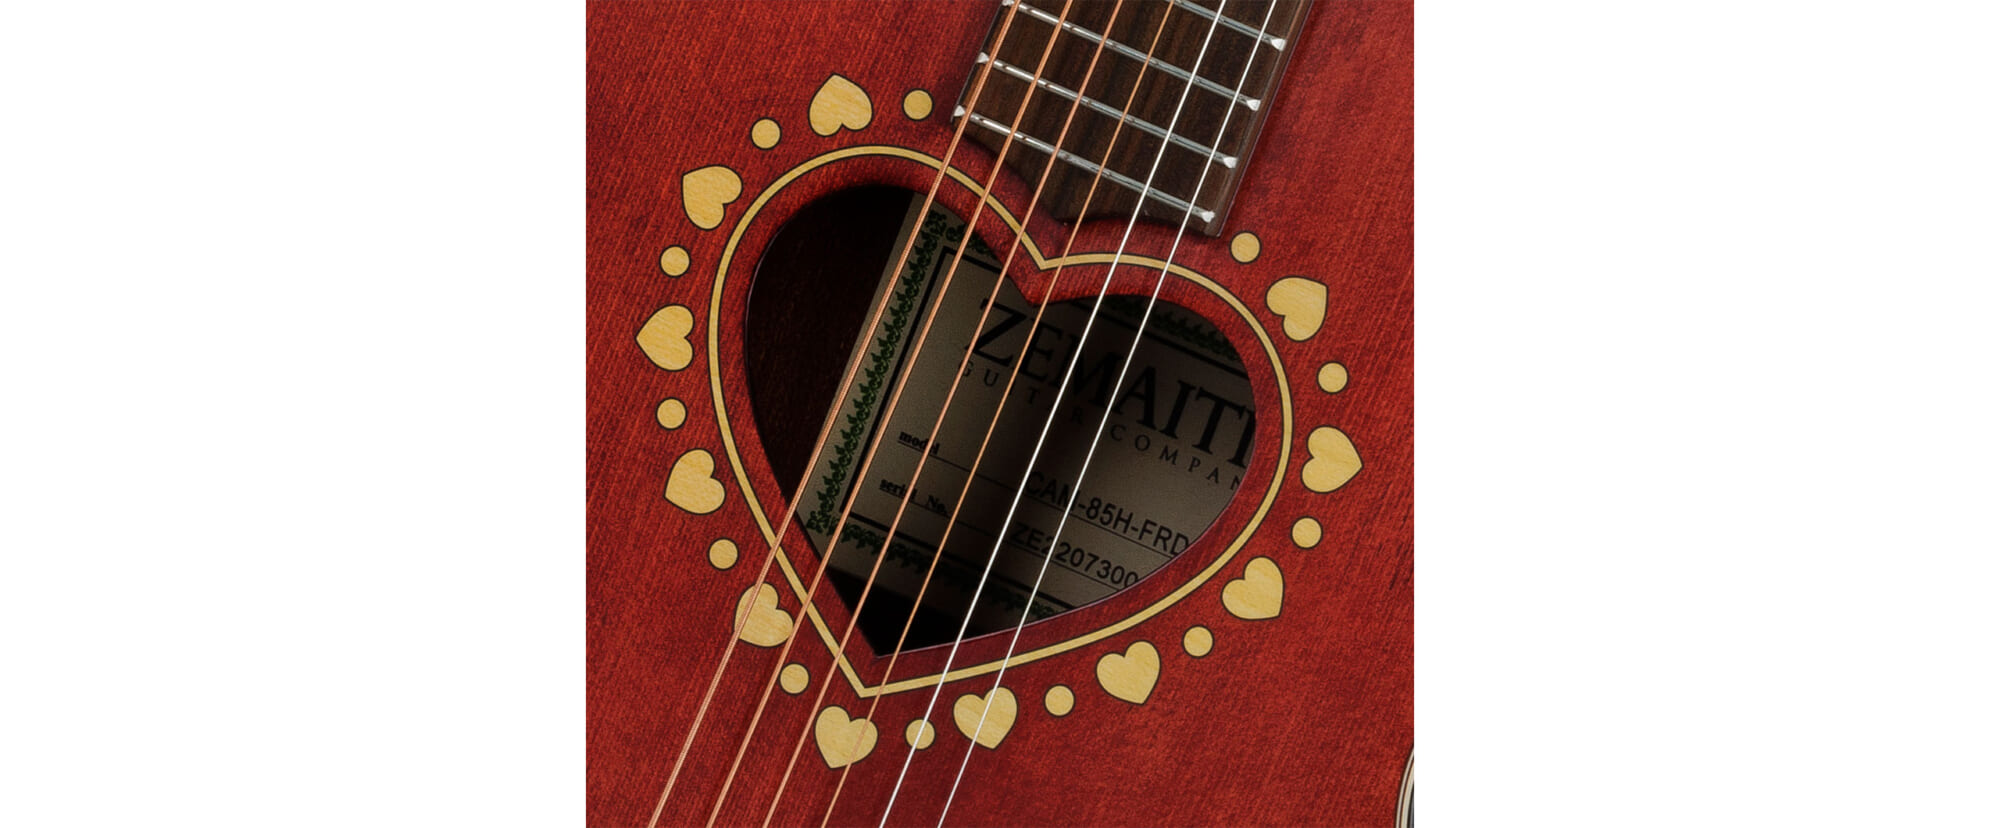 ゼマイティスより、ウッディなロゼッタを持つハート型サウンドホールのギターが3モデル登場